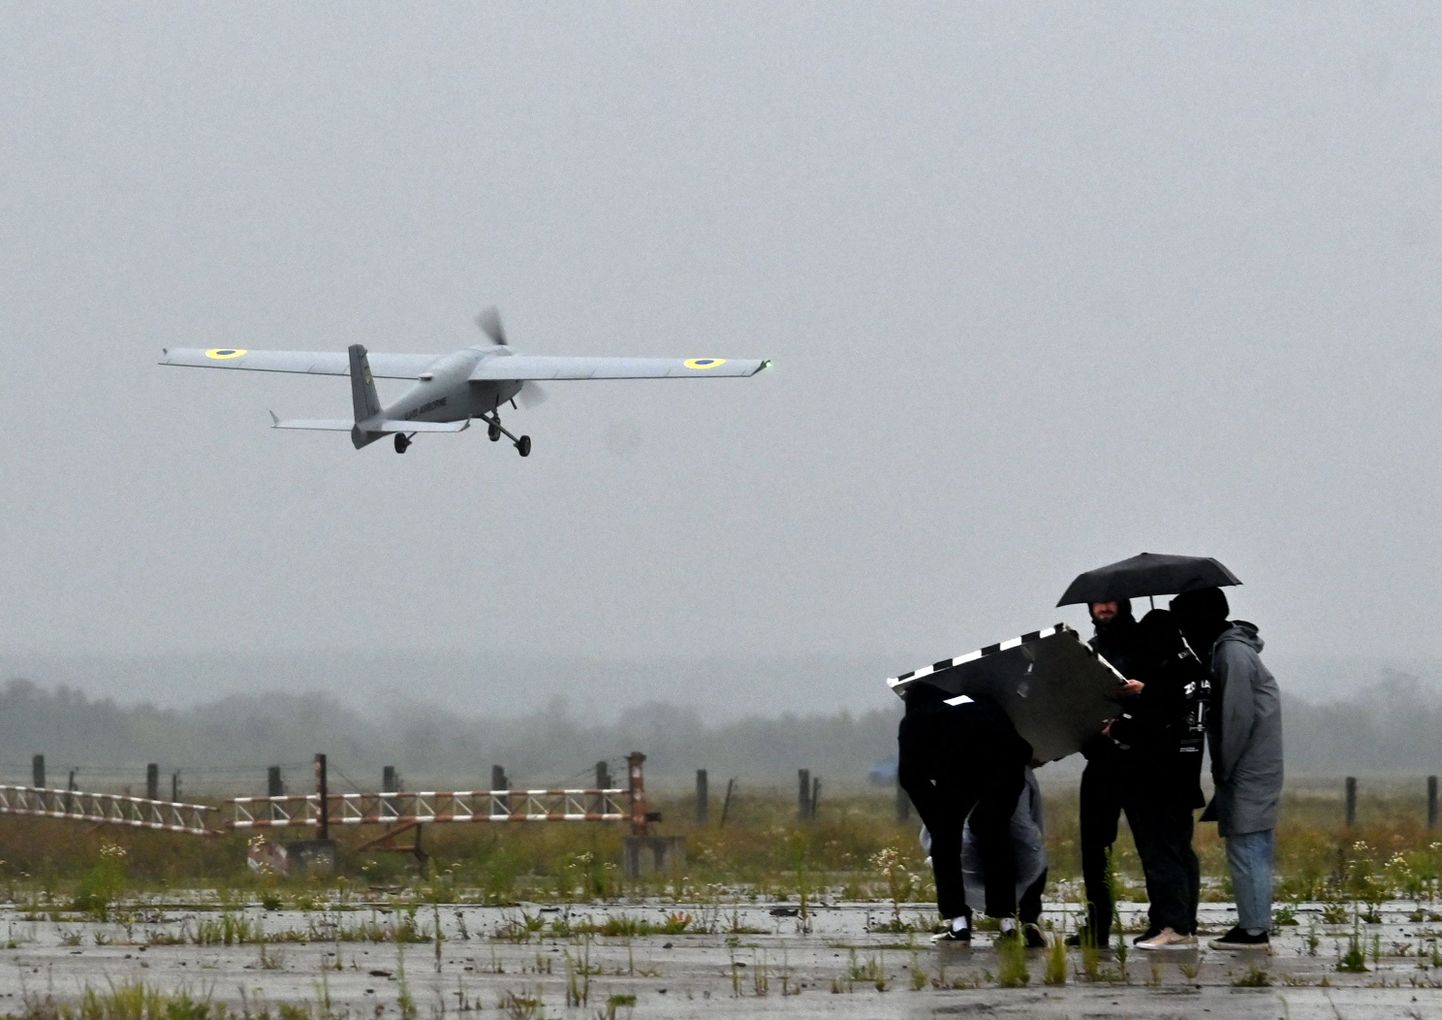 Pildil on Ukraina drooni Ukrjet UJ-22 (Airborne) katsetamine Kiievi lähistel möödunud aasta augustis. Samasuguse lennumasina rusud leiti sel nädalal 450 kilomeetri kaugusel Ukraina piirist ja vaid 100 km kaugusel Moskvast.